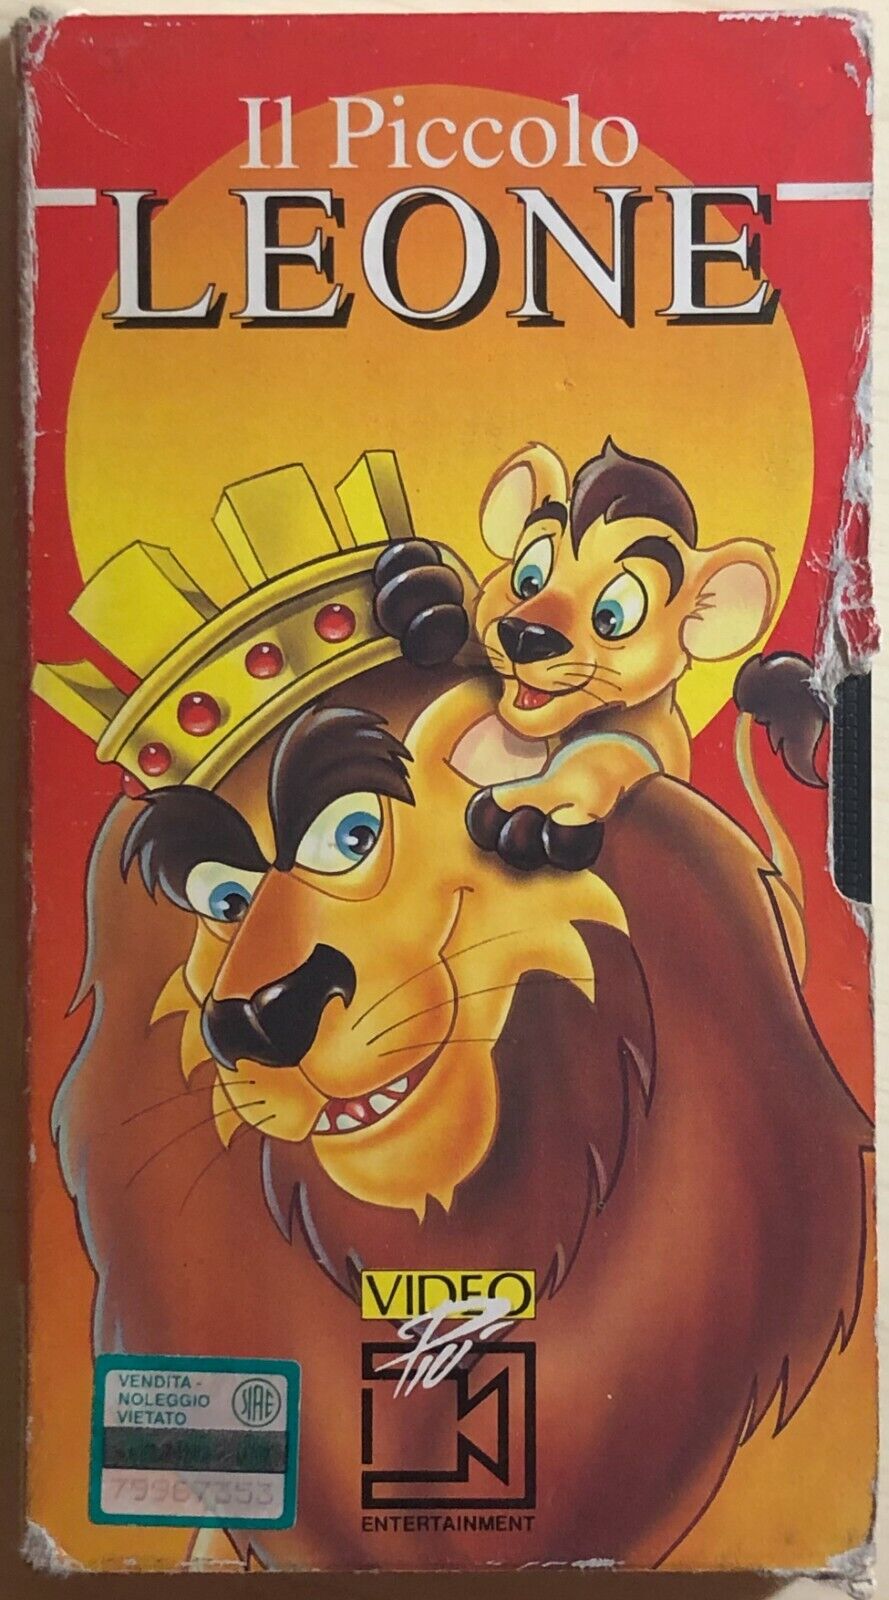 Il piccolo leone VHS di Aa.vv.,  1985,  Videopi? Entertainment